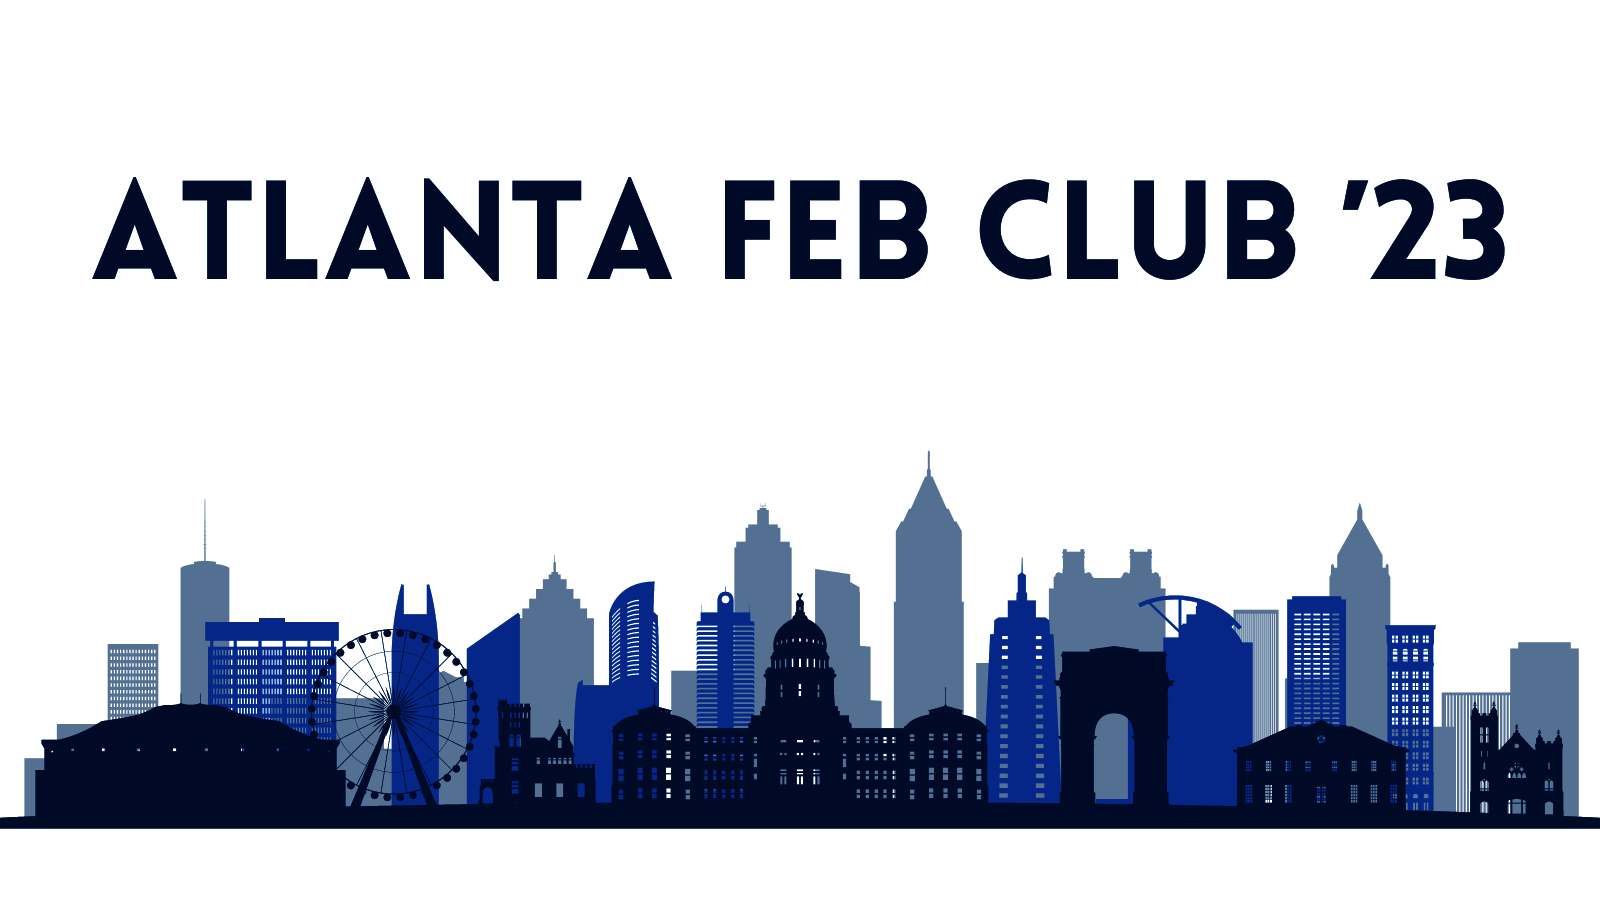 Feb Club Atlanta